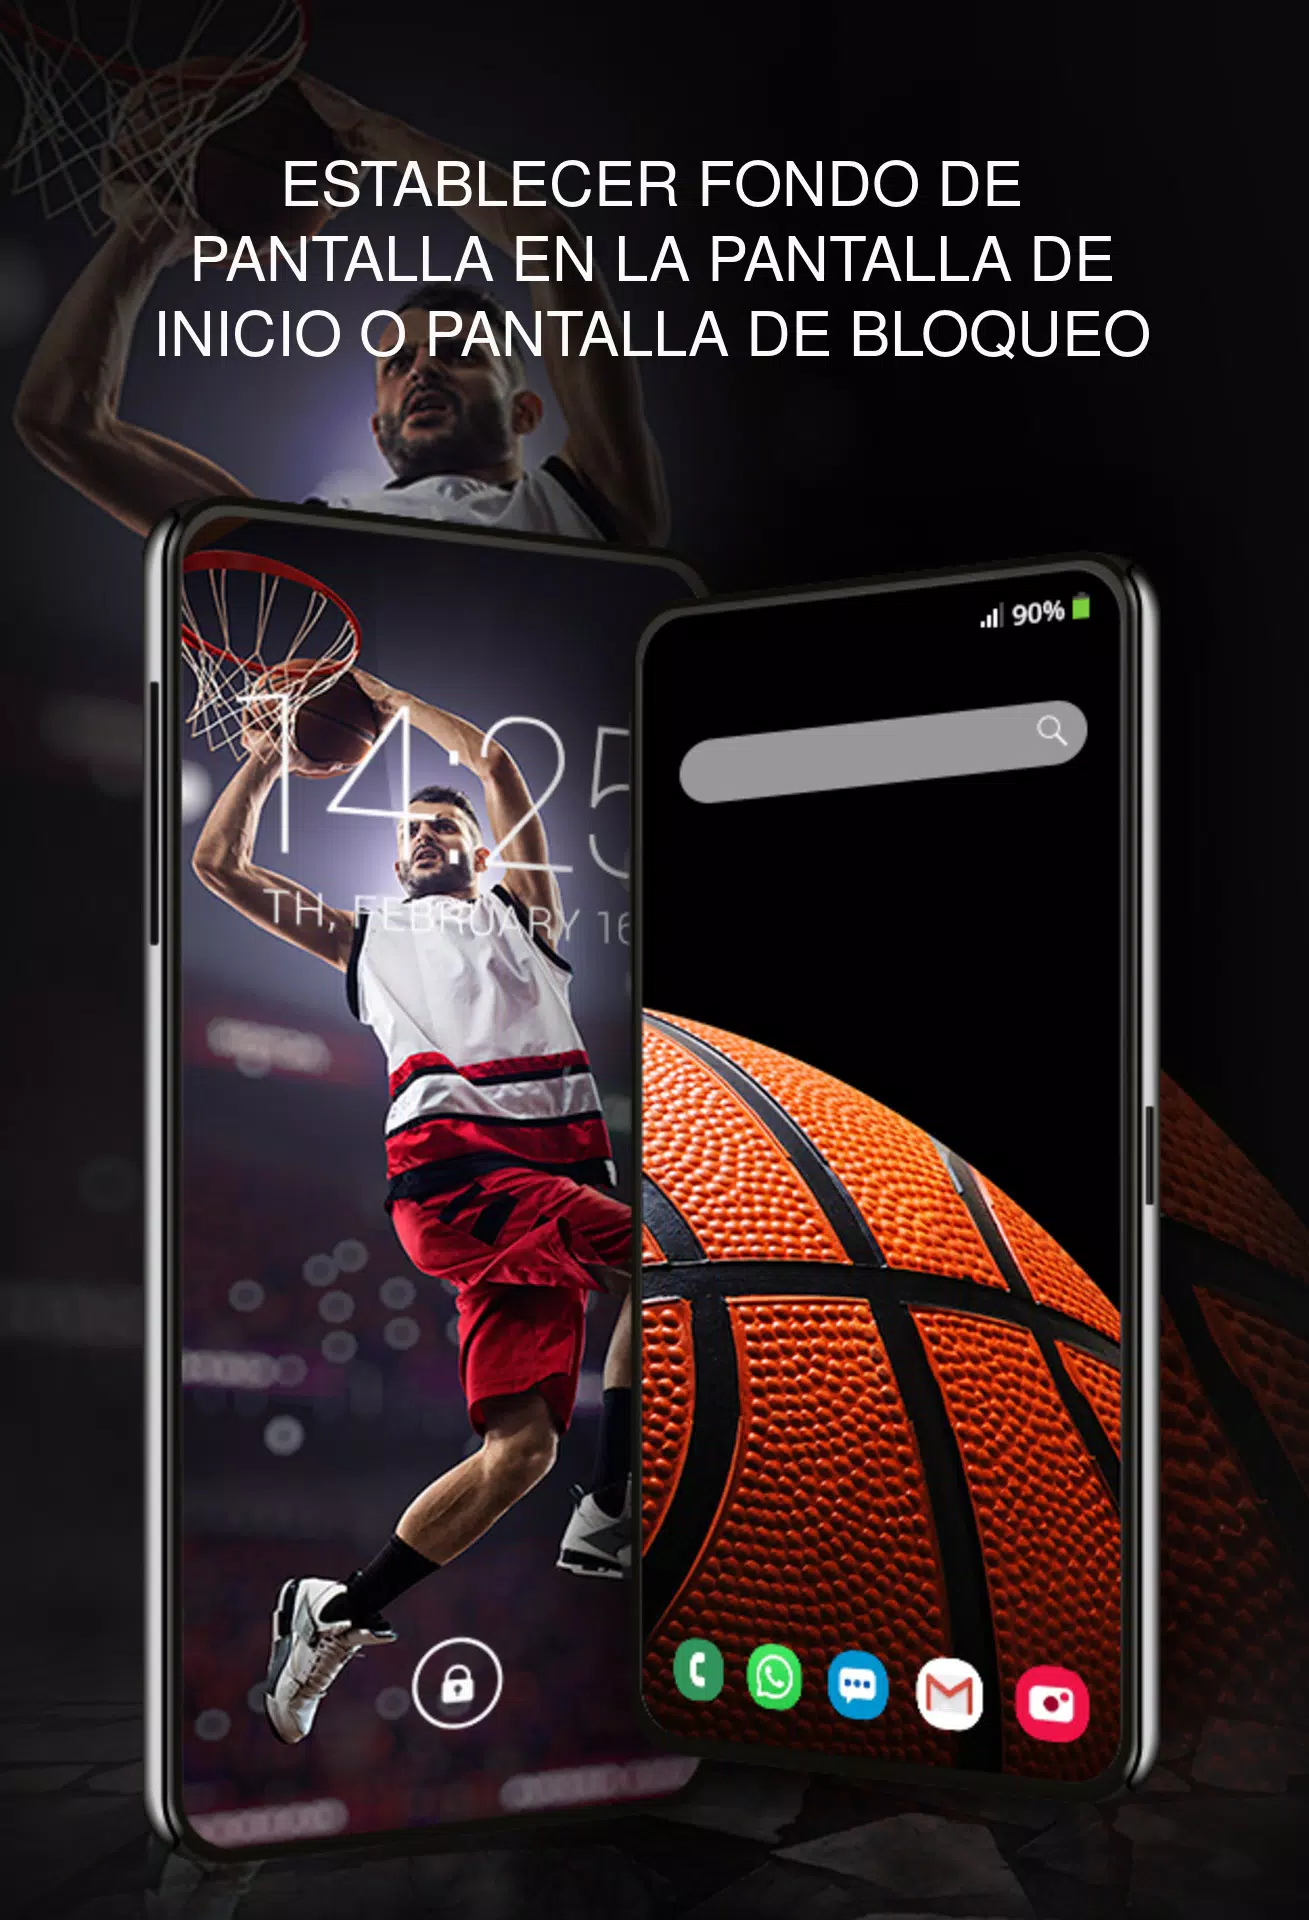 Descarga de APK de Fondos con baloncesto para Android